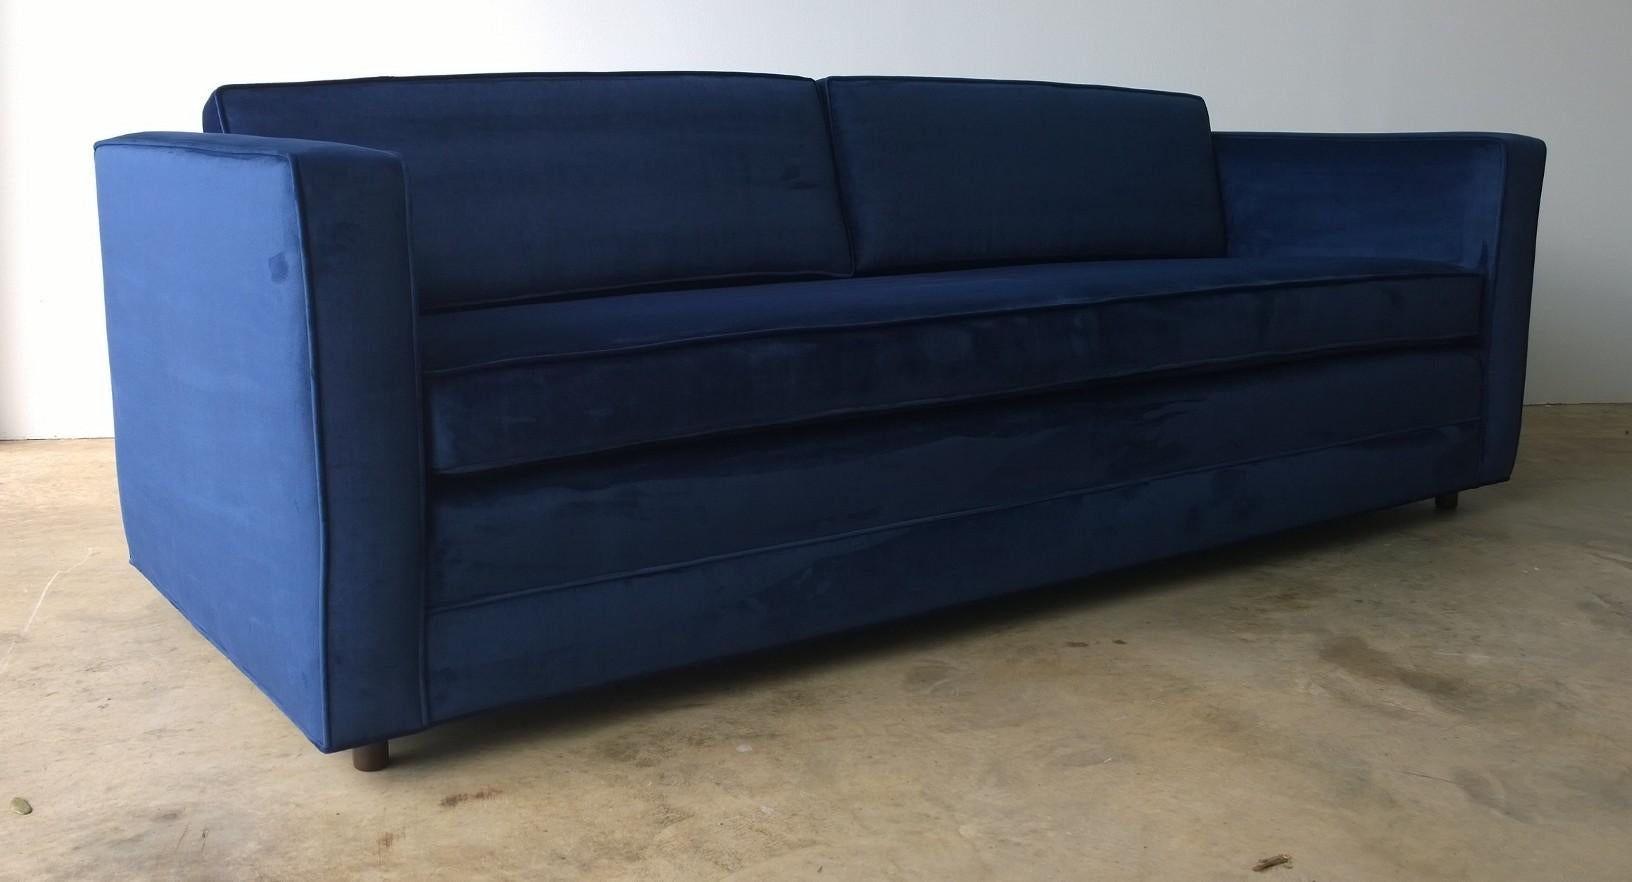 20th Century Mid-Century Modern Milo Baughman Style Tuxedo Sofa in New Blue Cotton Velvet